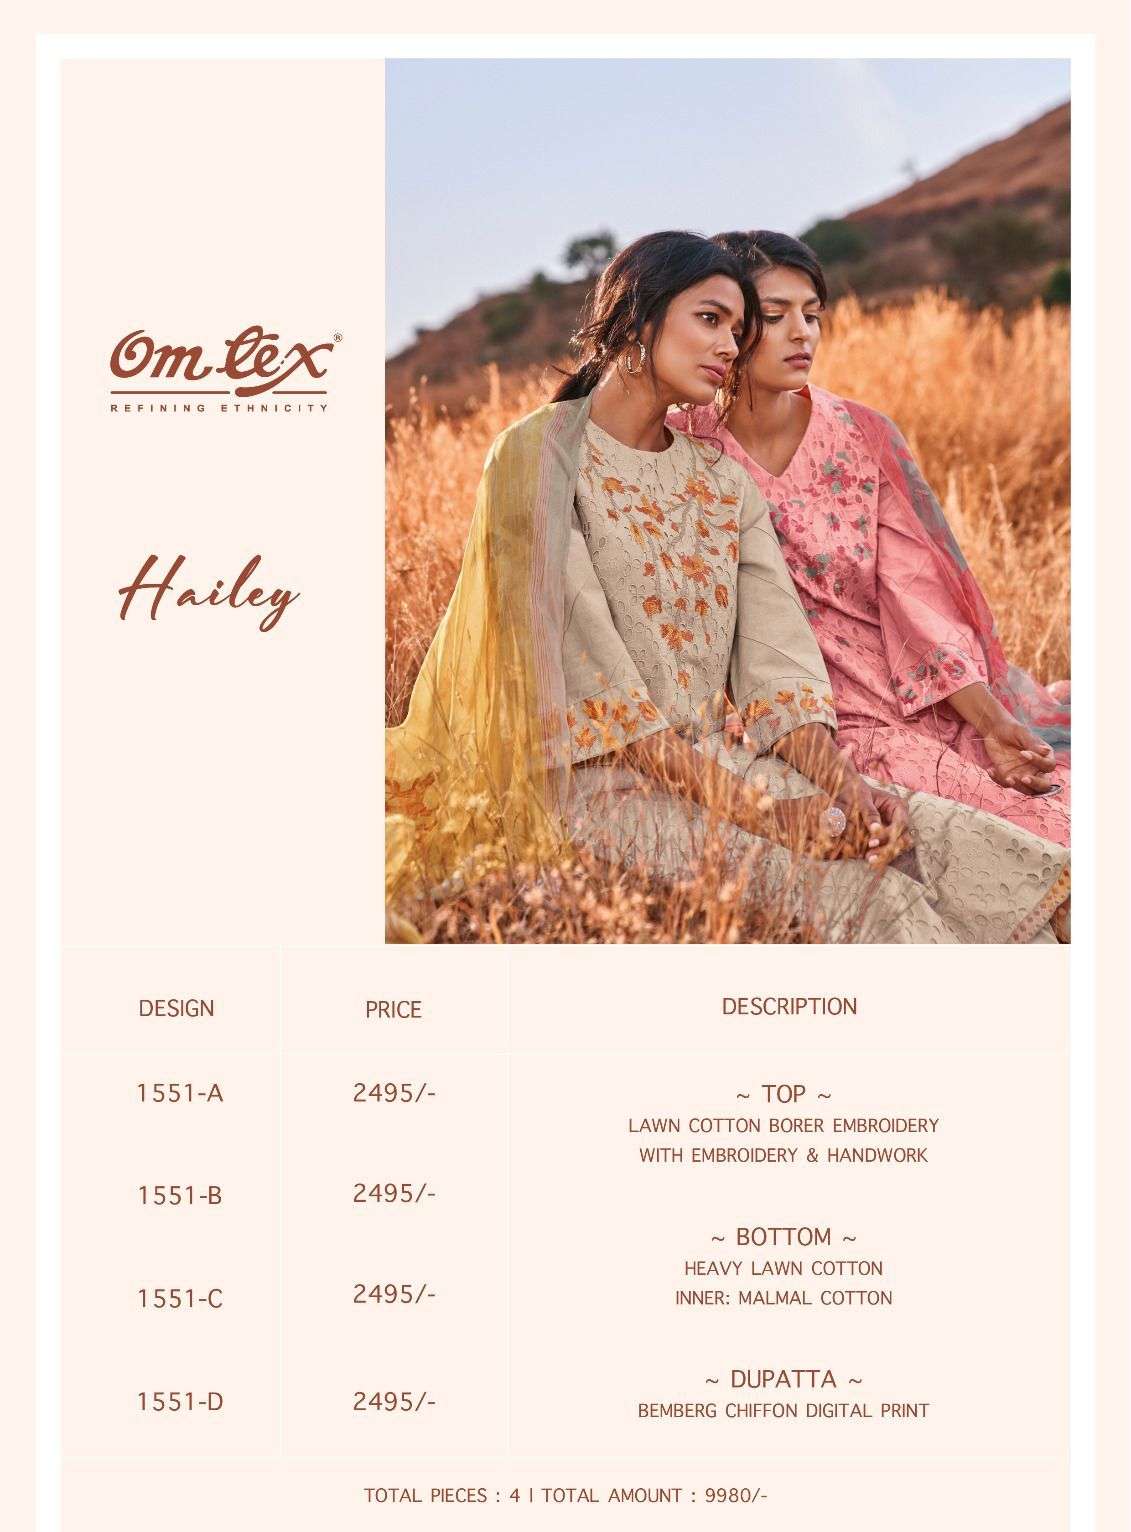 omtex hailey 1551 colours lawn cotton fancy salwar kameez wholesale price surat